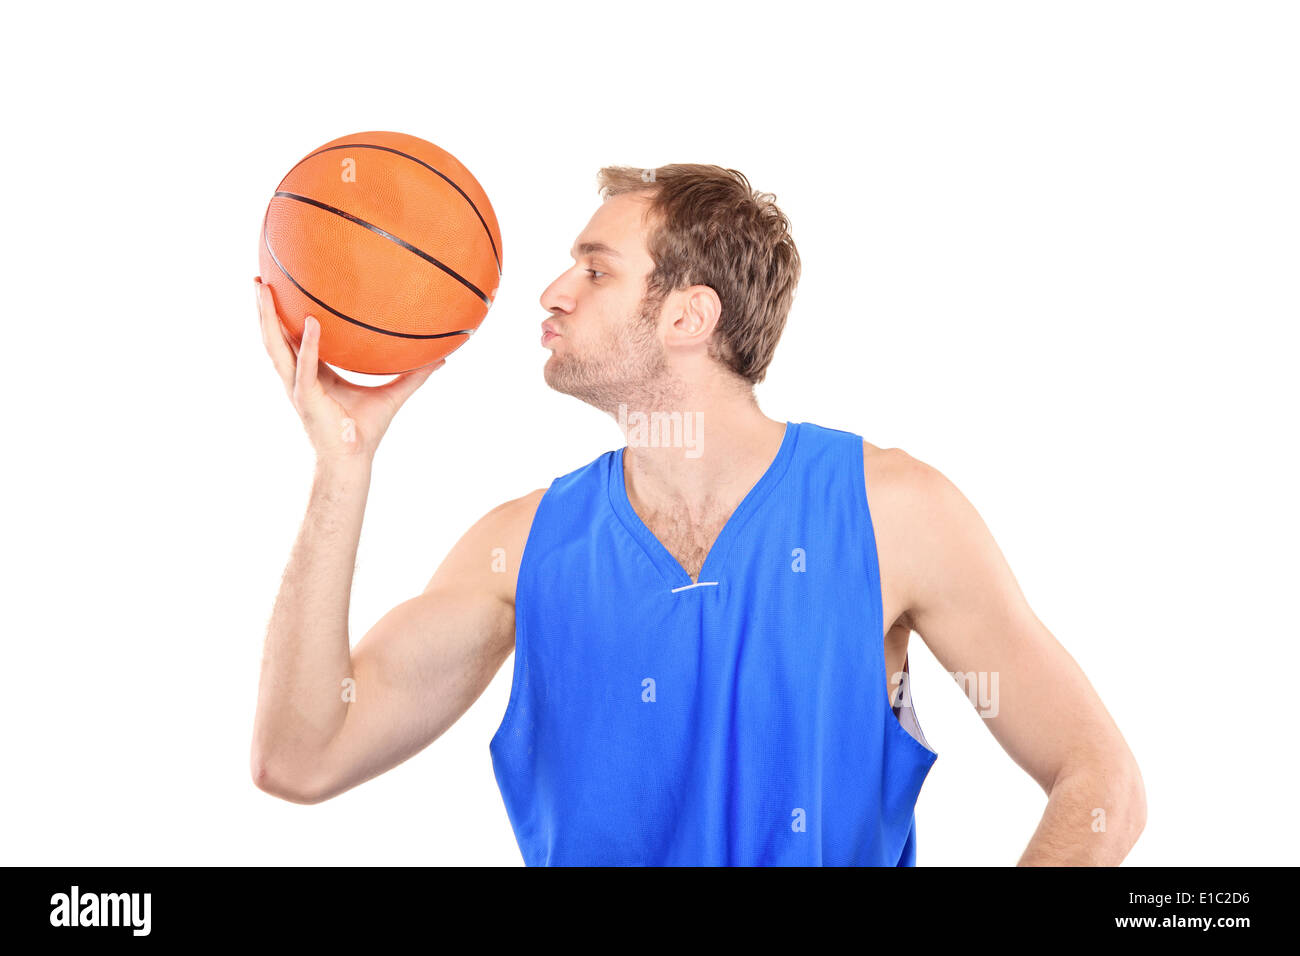 Young sportsman embrassant un basket-ball Banque D'Images